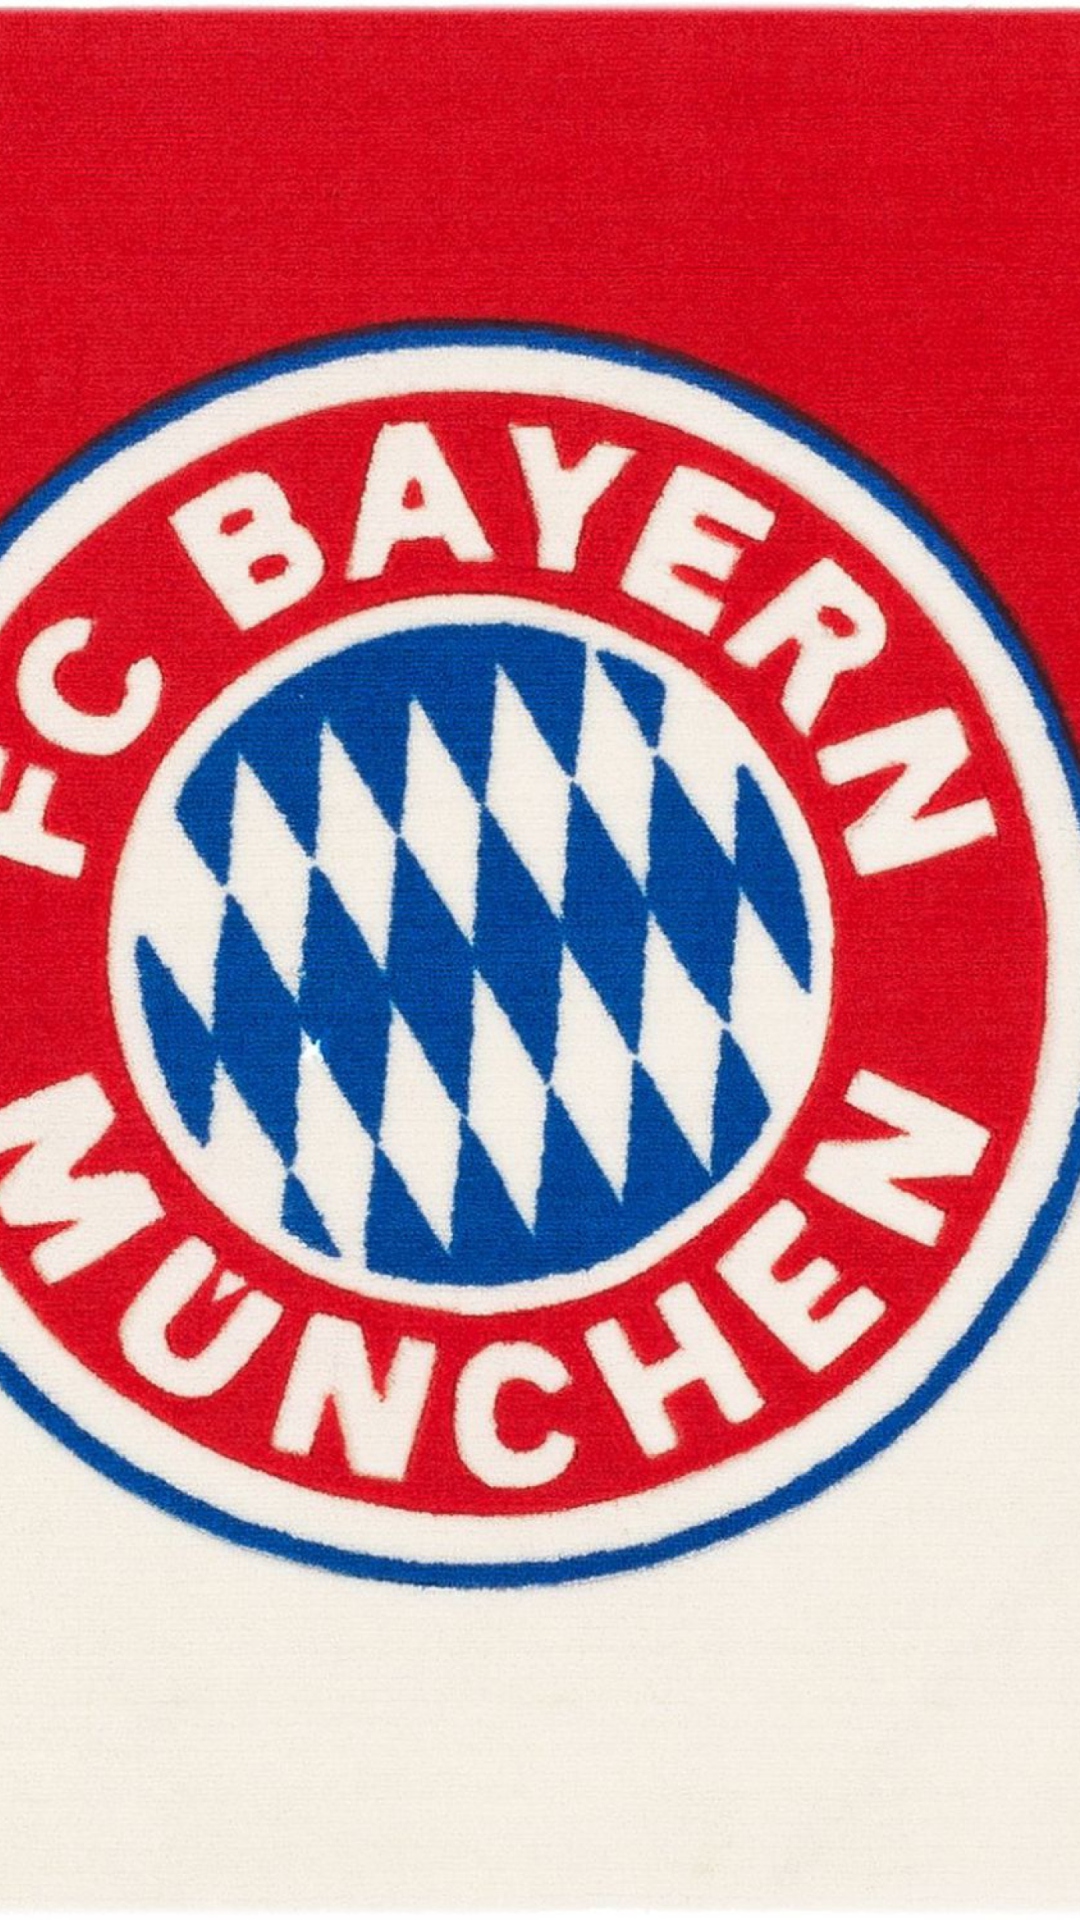 Fc Bayern Munchen wallpaper 1080x1920